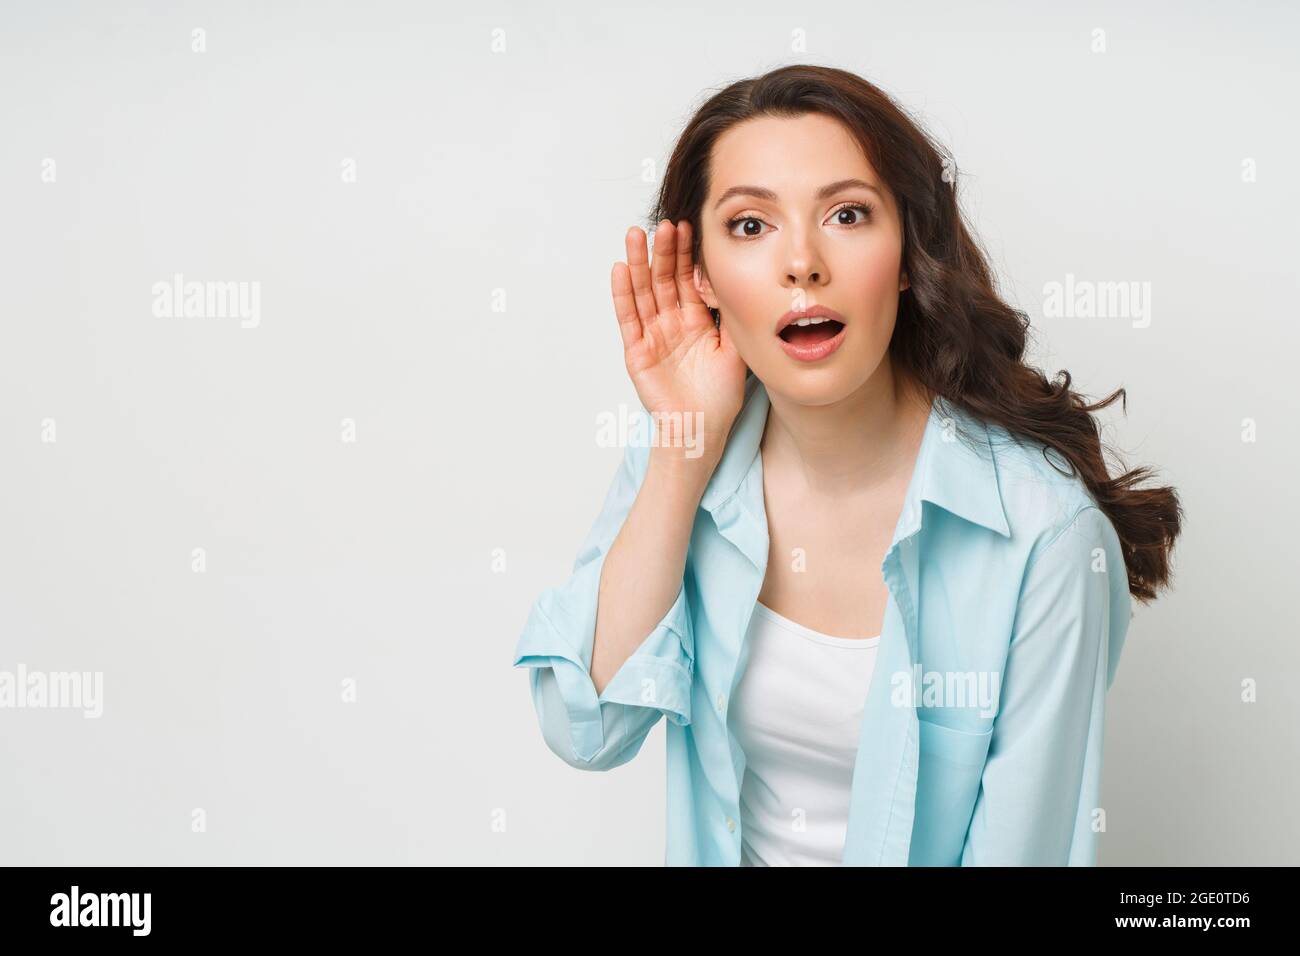 Eine junge Frau lauscht das Gespräch einer anderen Person mit der Hand ans Ohr. Das Konzept von Lauschangriffen, Spionage, Klatsch und der gelben Presse Stockfoto